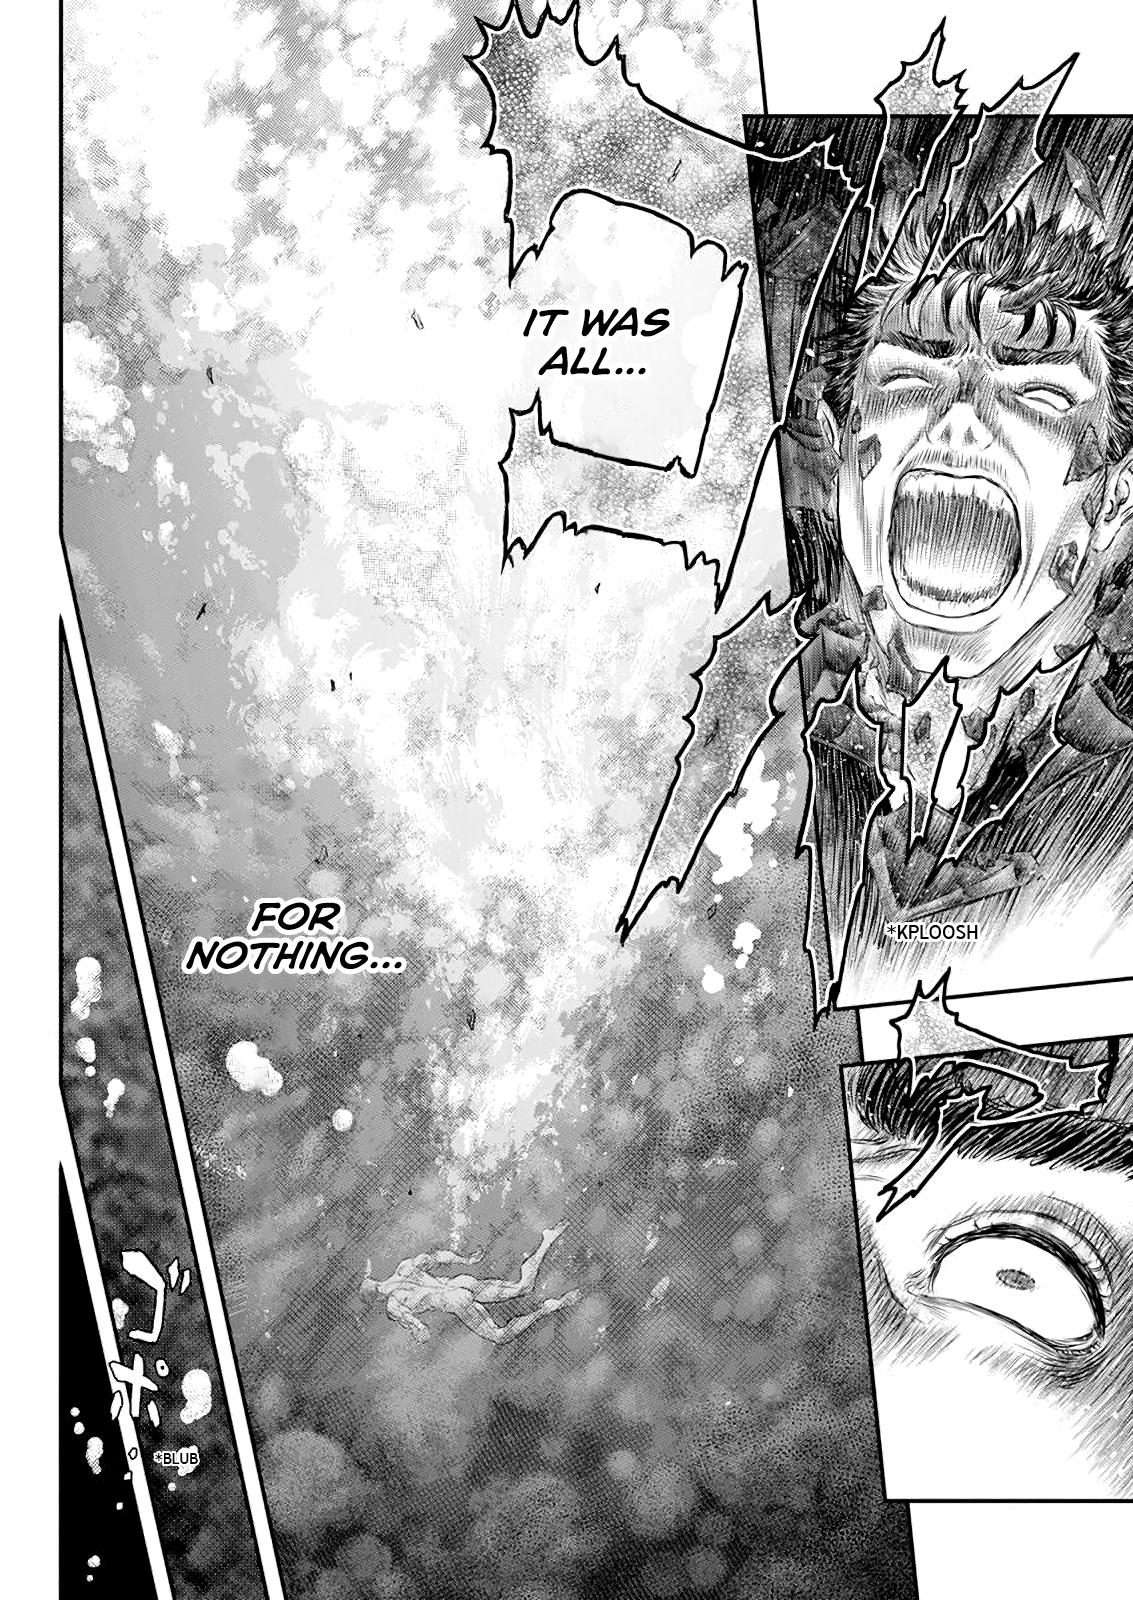 Berserk Manga Chapter 371 image 07